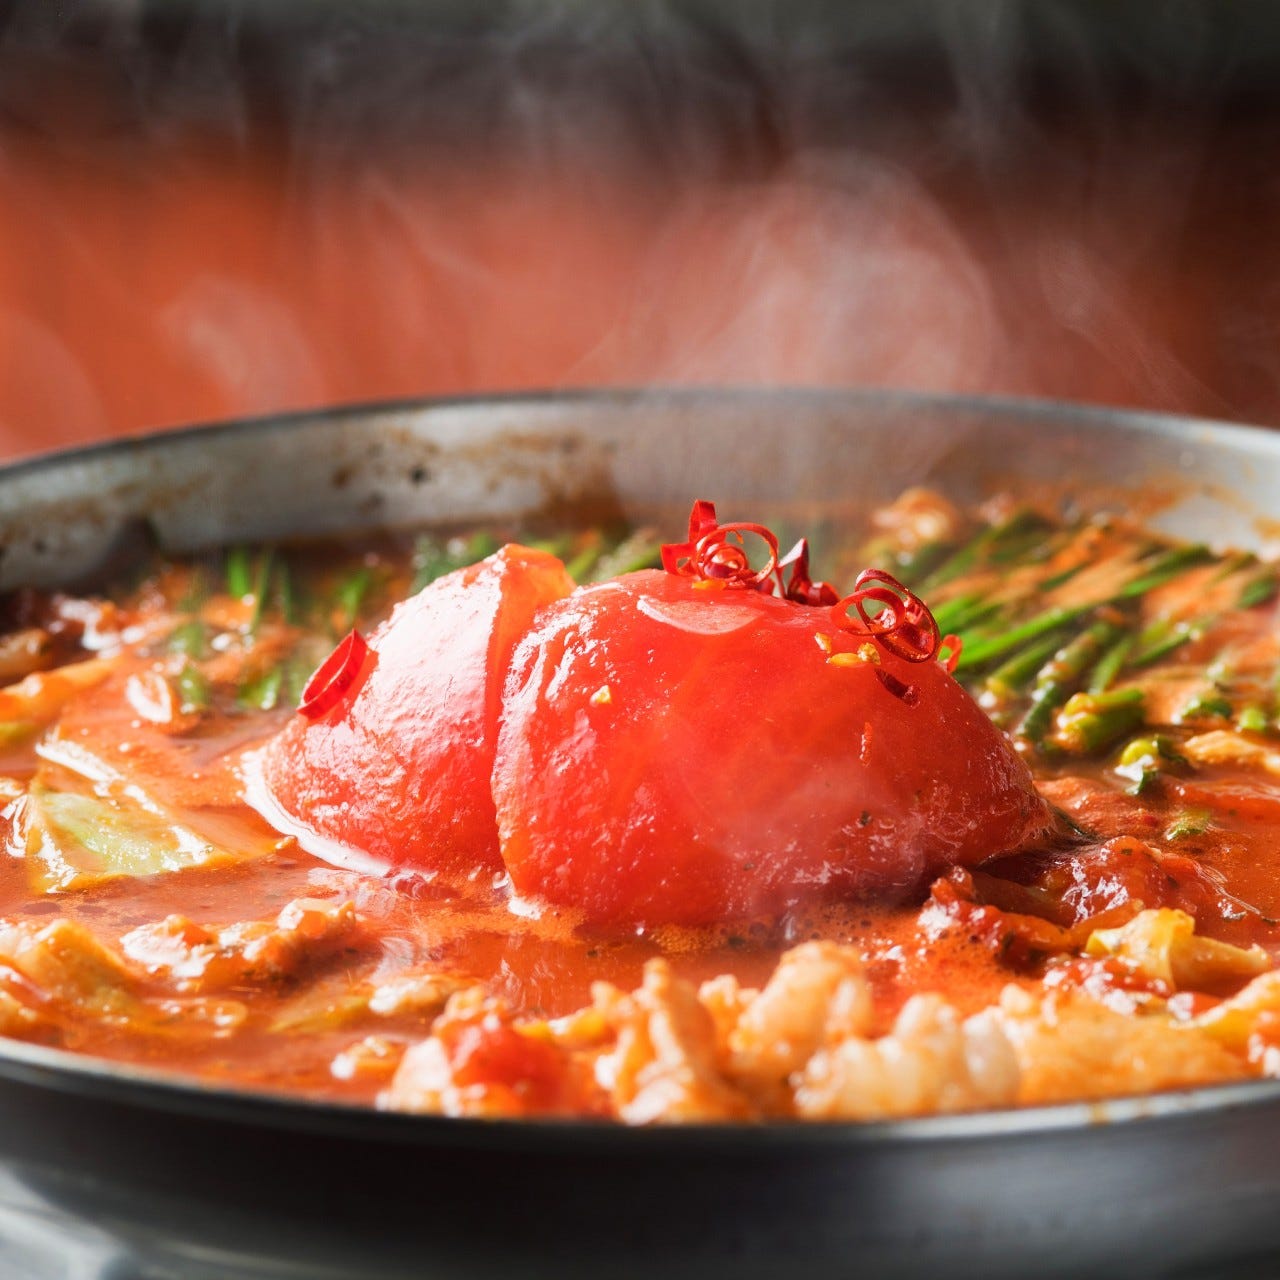 トマトもつ鍋
リコピン豊富で酸味が後味さっぱり　1580円